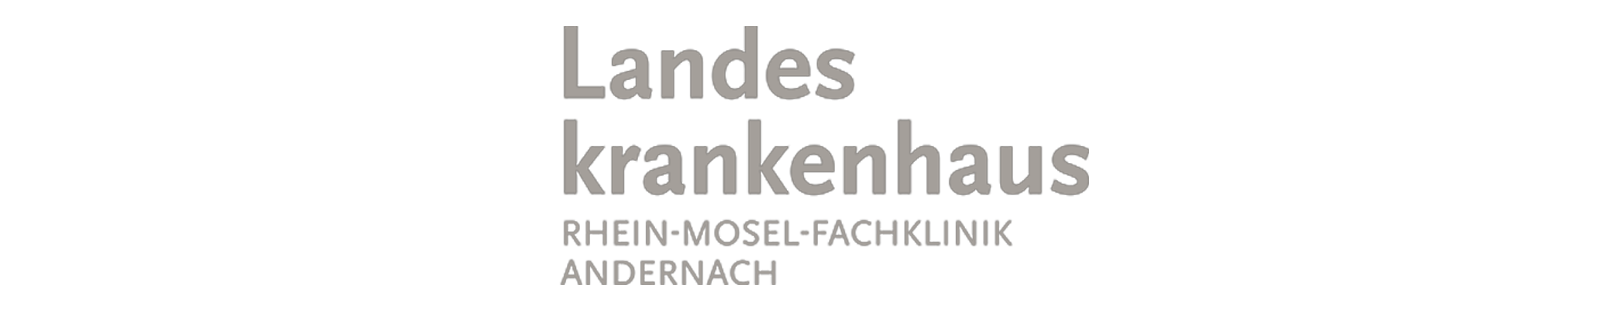 Landeskrankenhaus Rhein Mosel Fachklinik Andernach